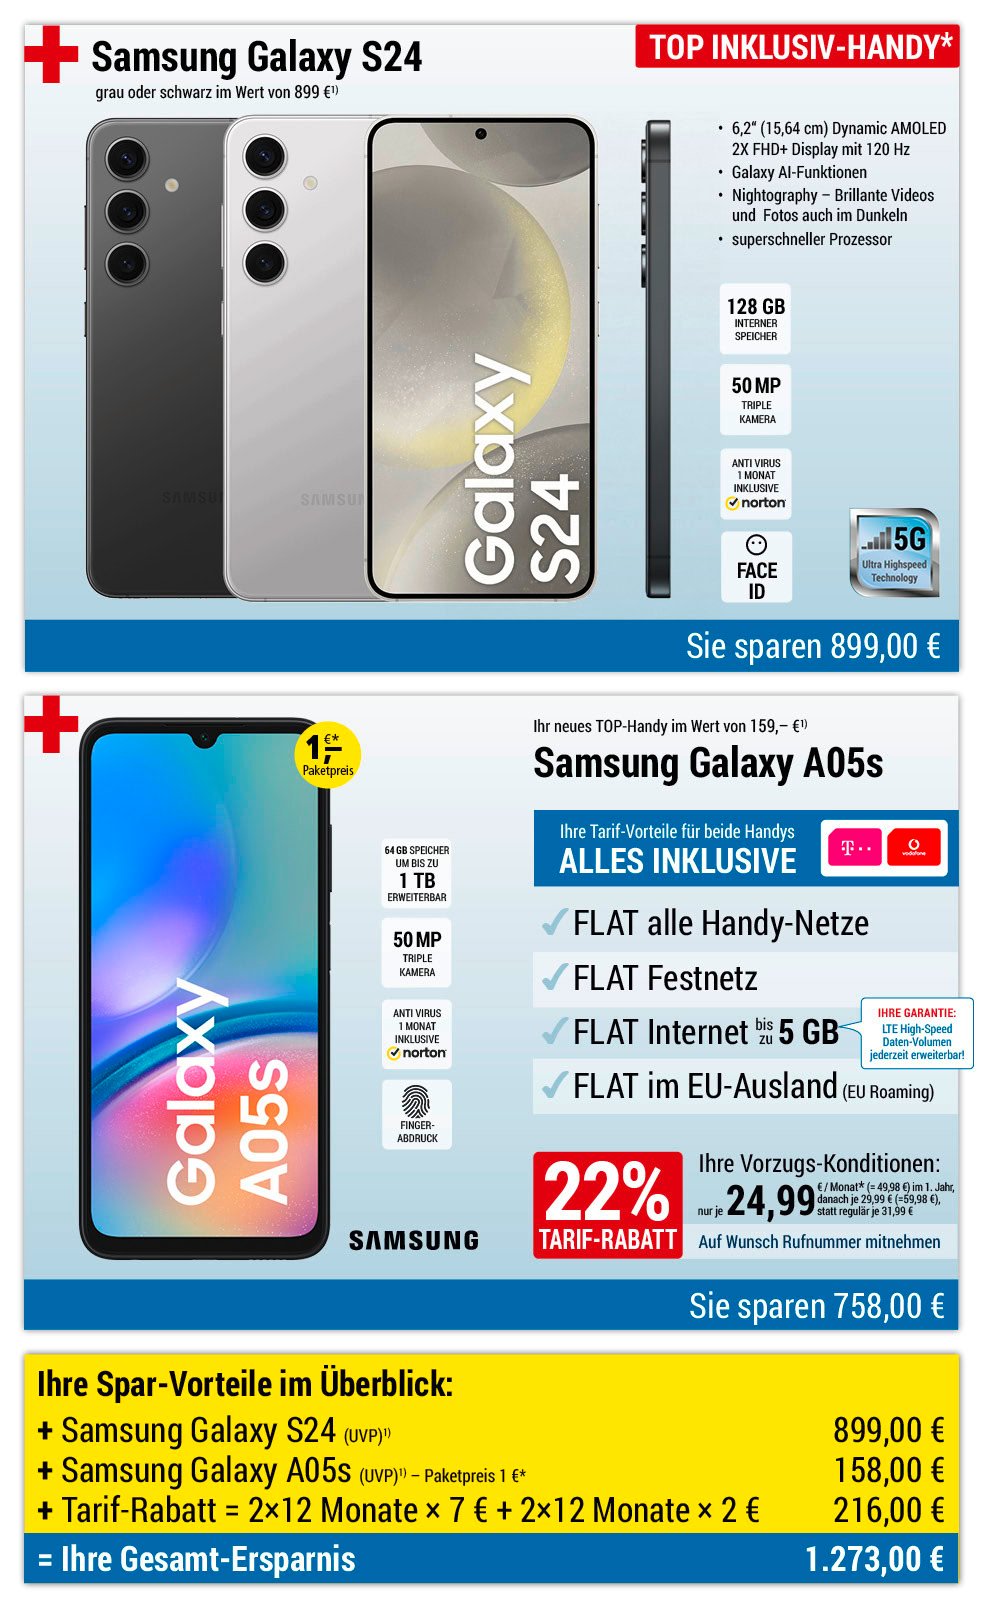 Für nur 1 €*: Samsung Galaxy S24 + Samsung Galaxy A05s + Handyverträge mit ALL NET FLAT für je 24,99 €/Monat im 1. Jahr